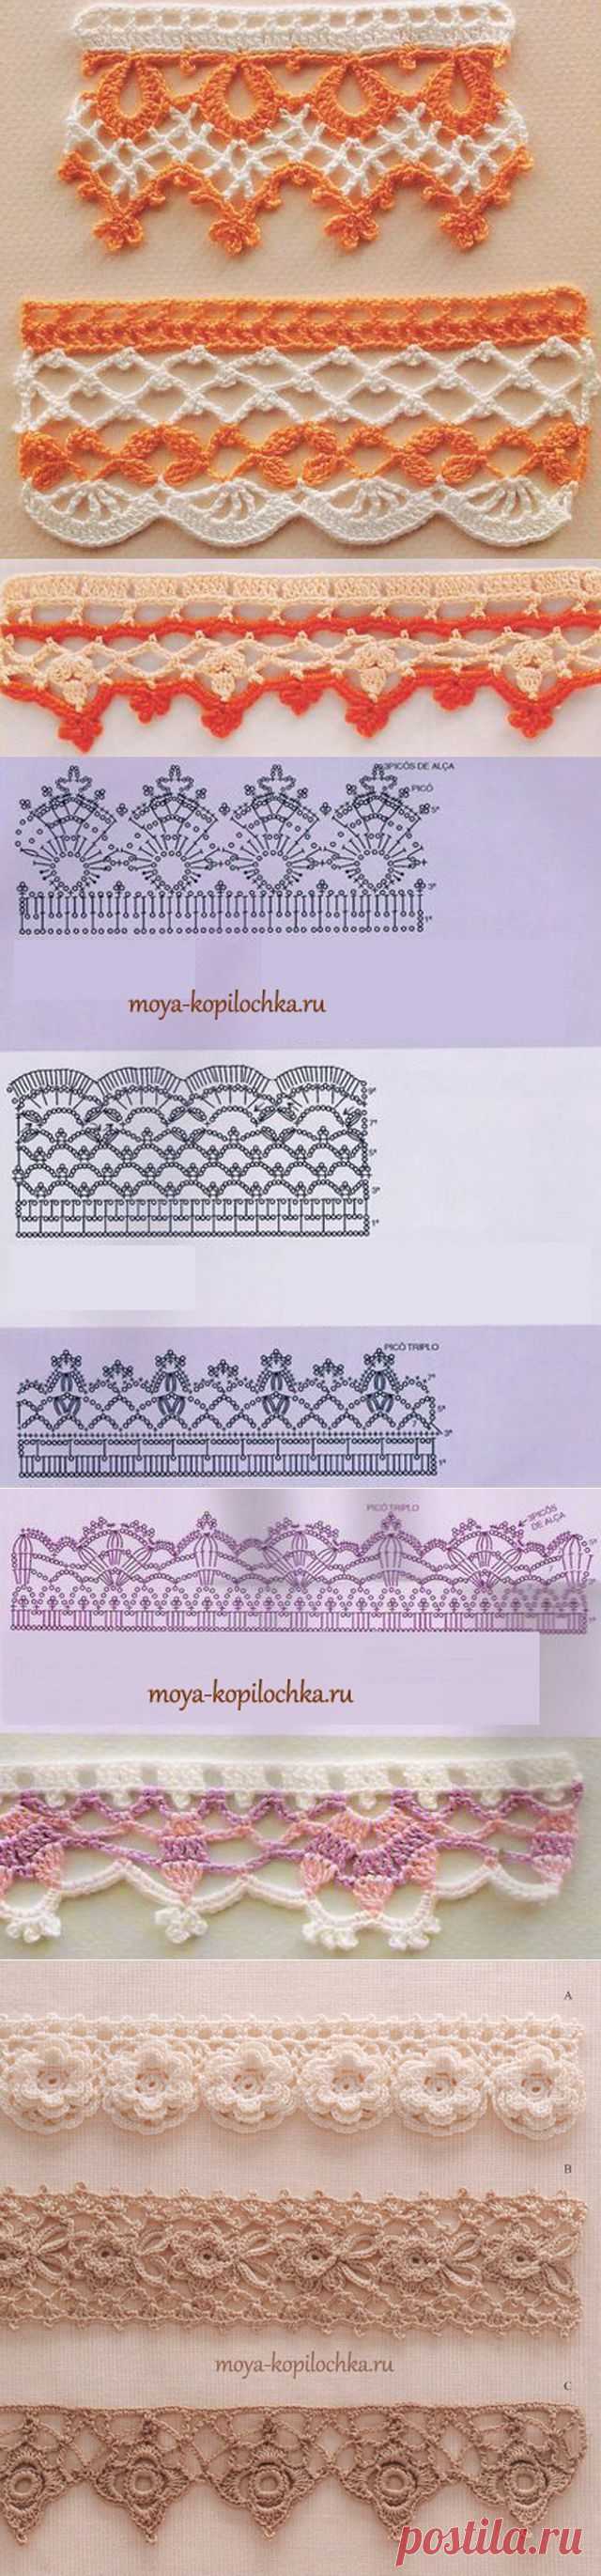 42 образца вязаного кружева для отделки края изделия со схемами - Вязание - Моя копилочка